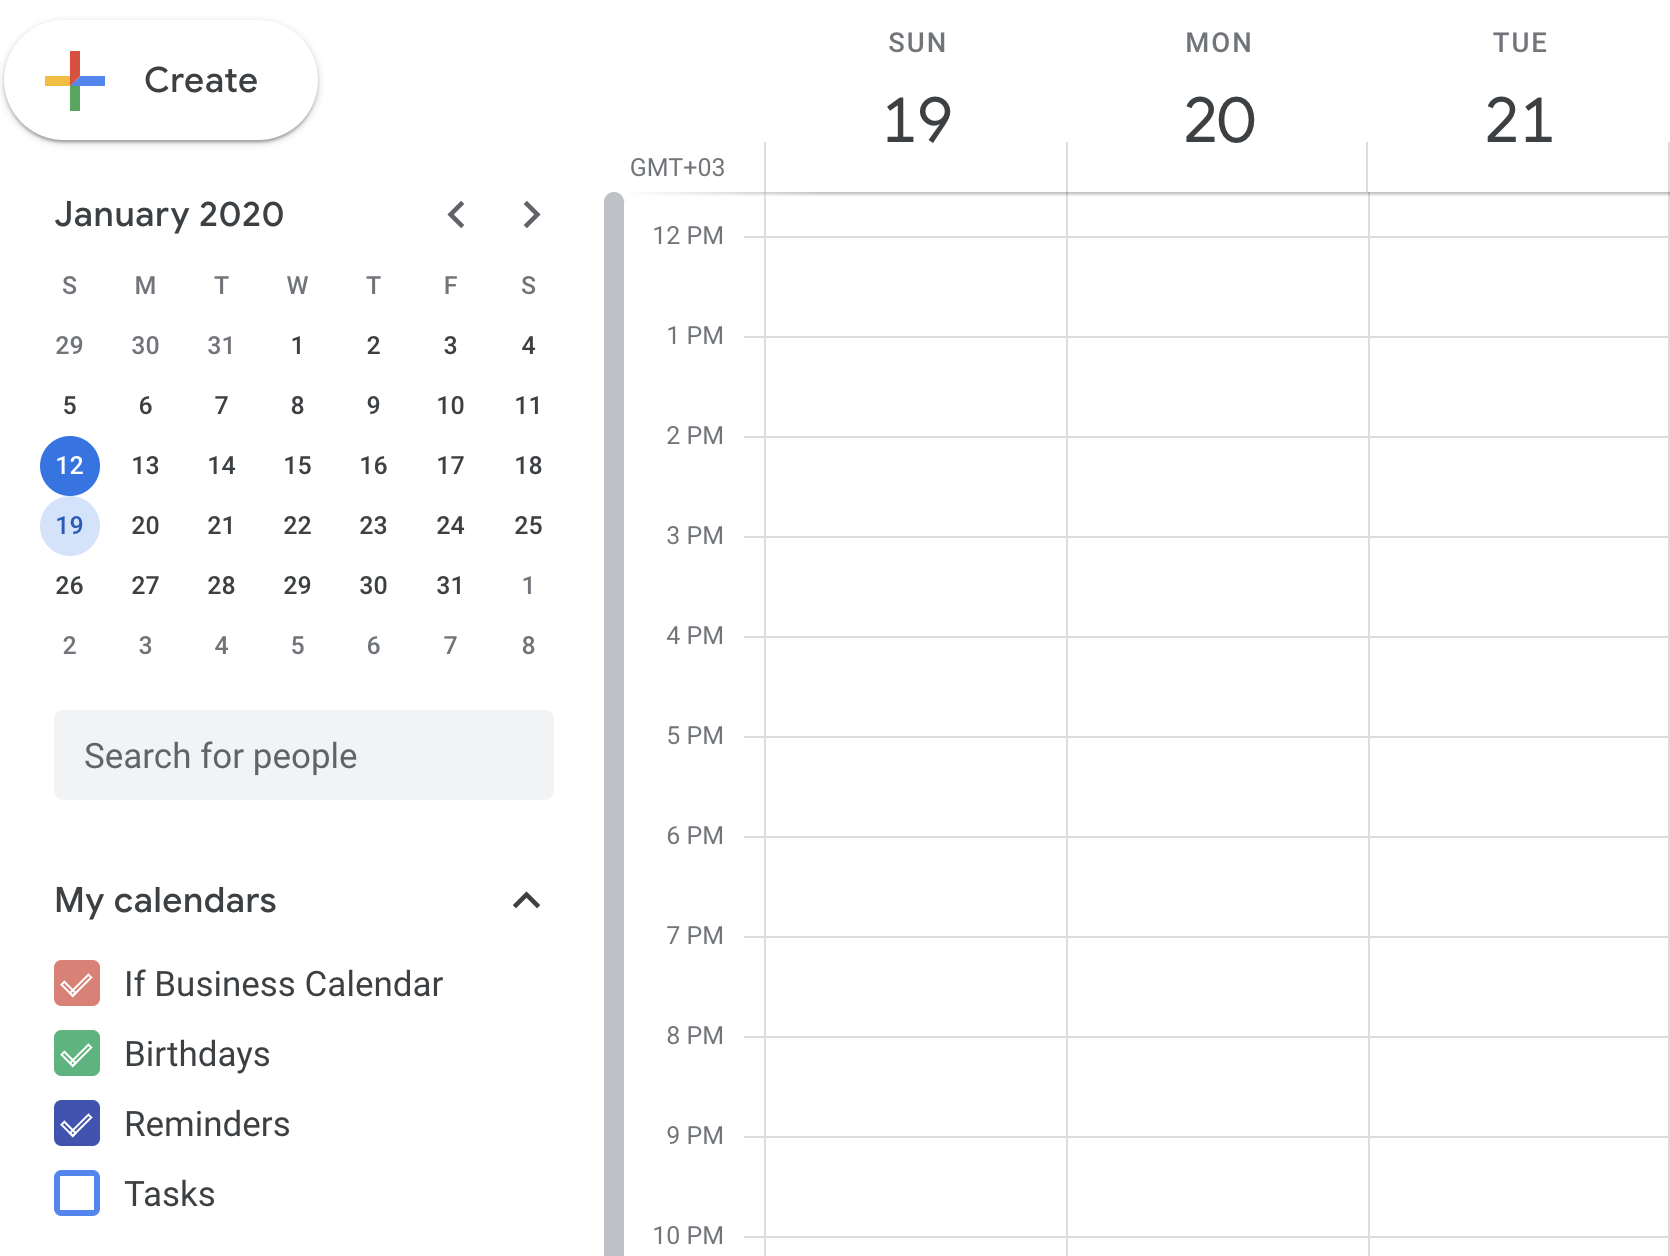 How to share google calendar horedsball